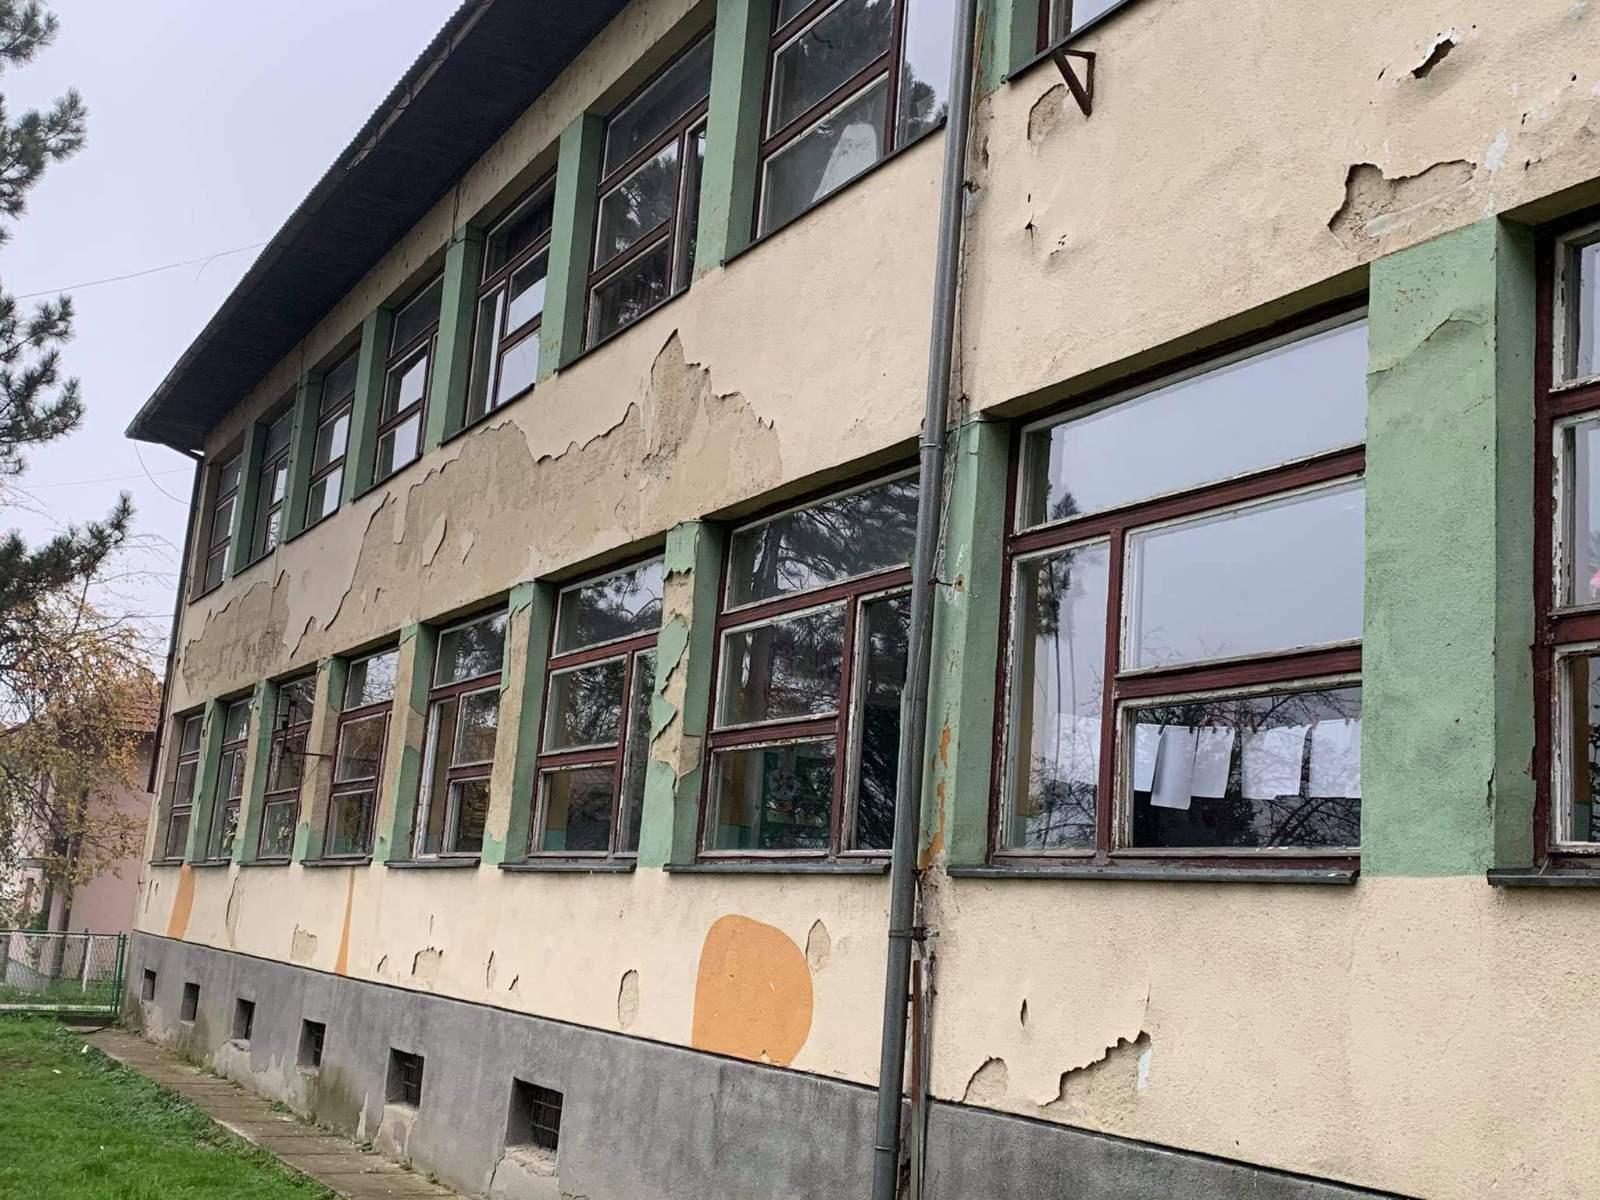 Lijepa vijest za OŠ "Đurđevik": Odobreno 220.000 KM za zamjenu stolarije i ugradnju fasade